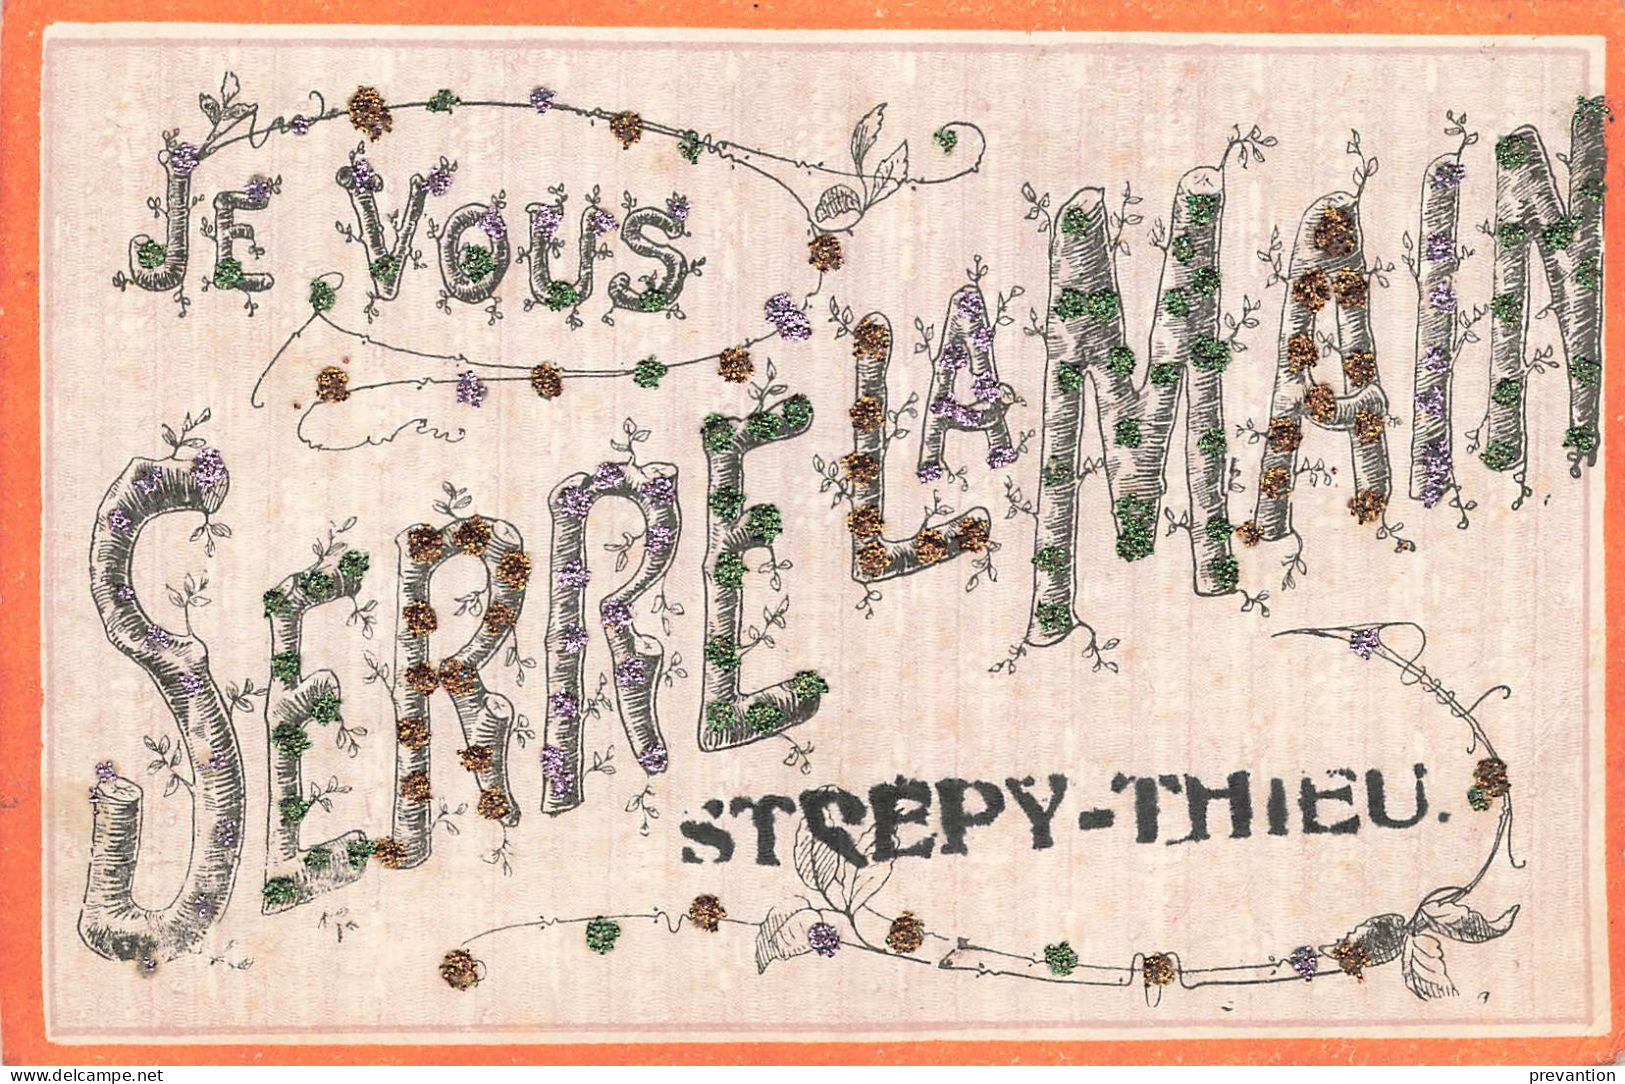 Je Vous Serre La Main De STREPY-THIEU- Carte Colorée Avec Petits Brillants Et Circulé En 1908 Vers Braine Le Comte - La Louvière